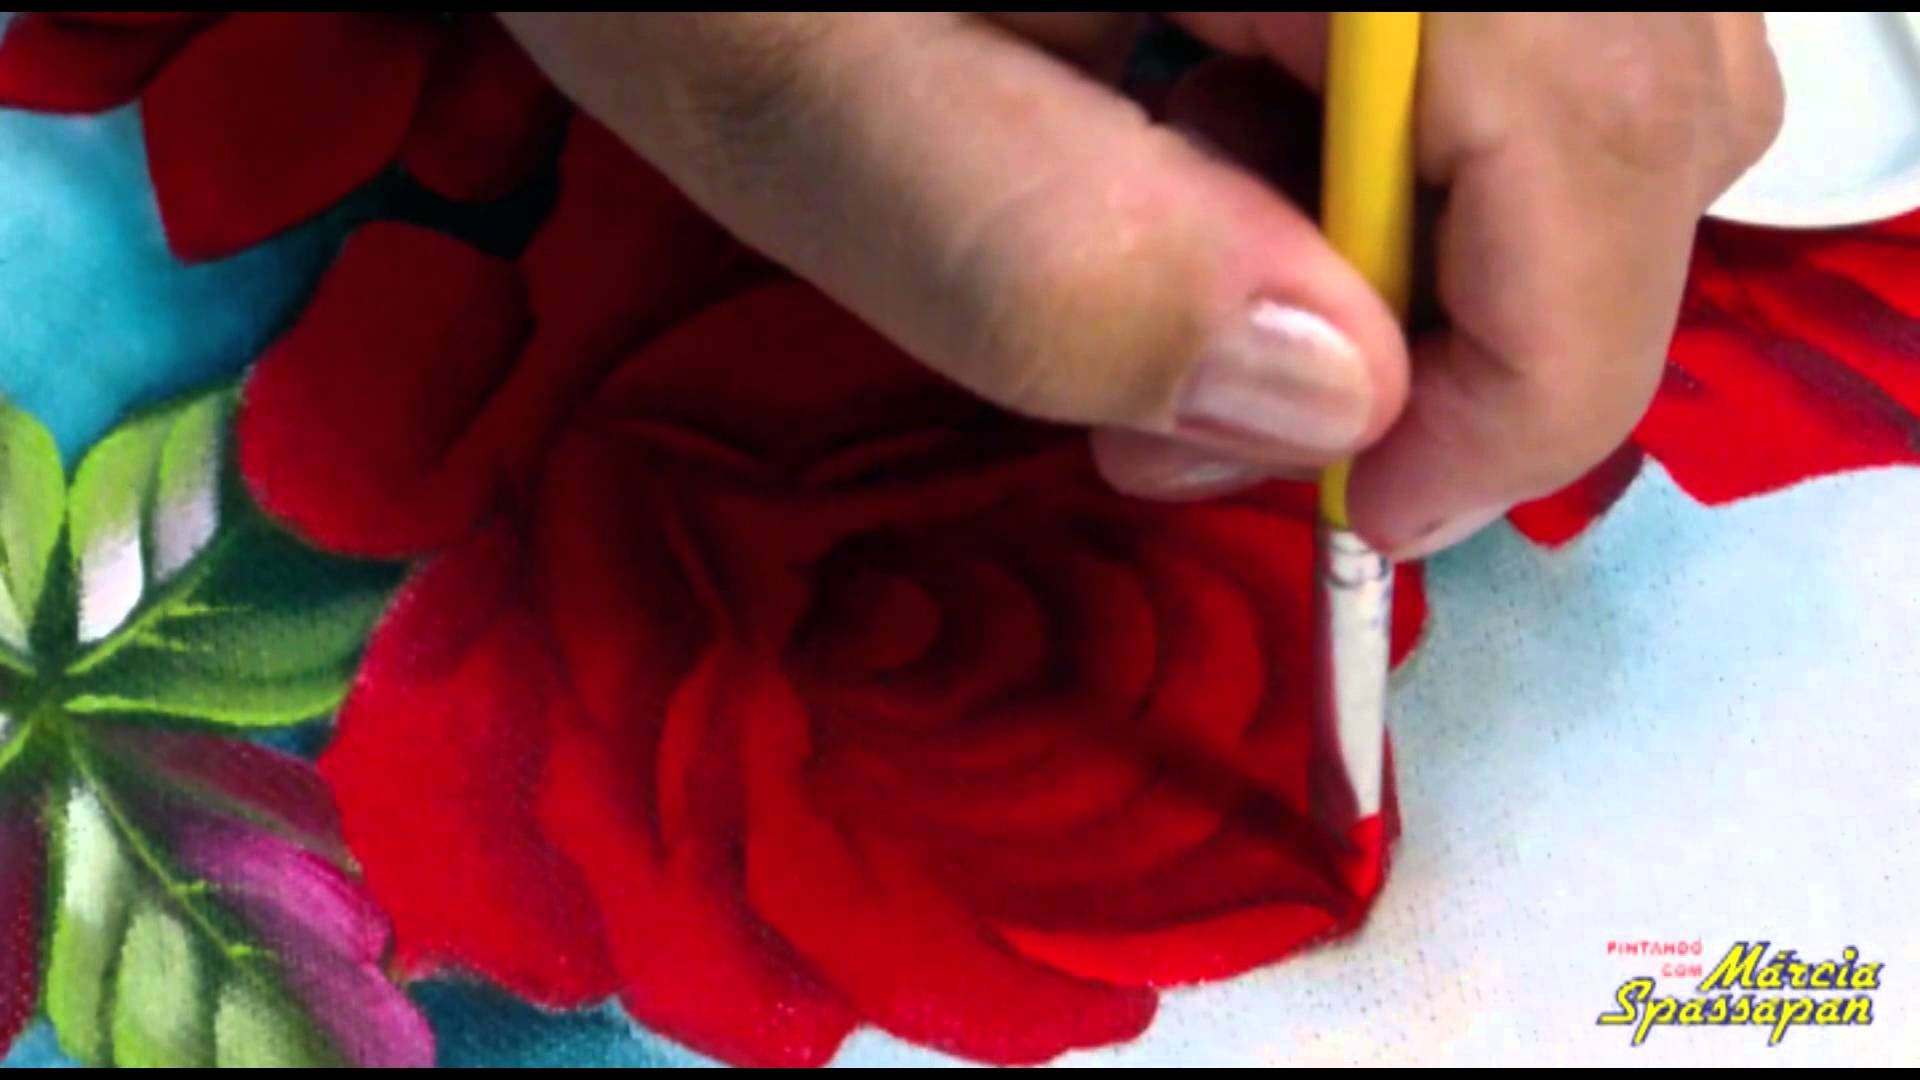 Pintando em 5 Minutos com Márcia Spassapan | Rosas Fluorescentes